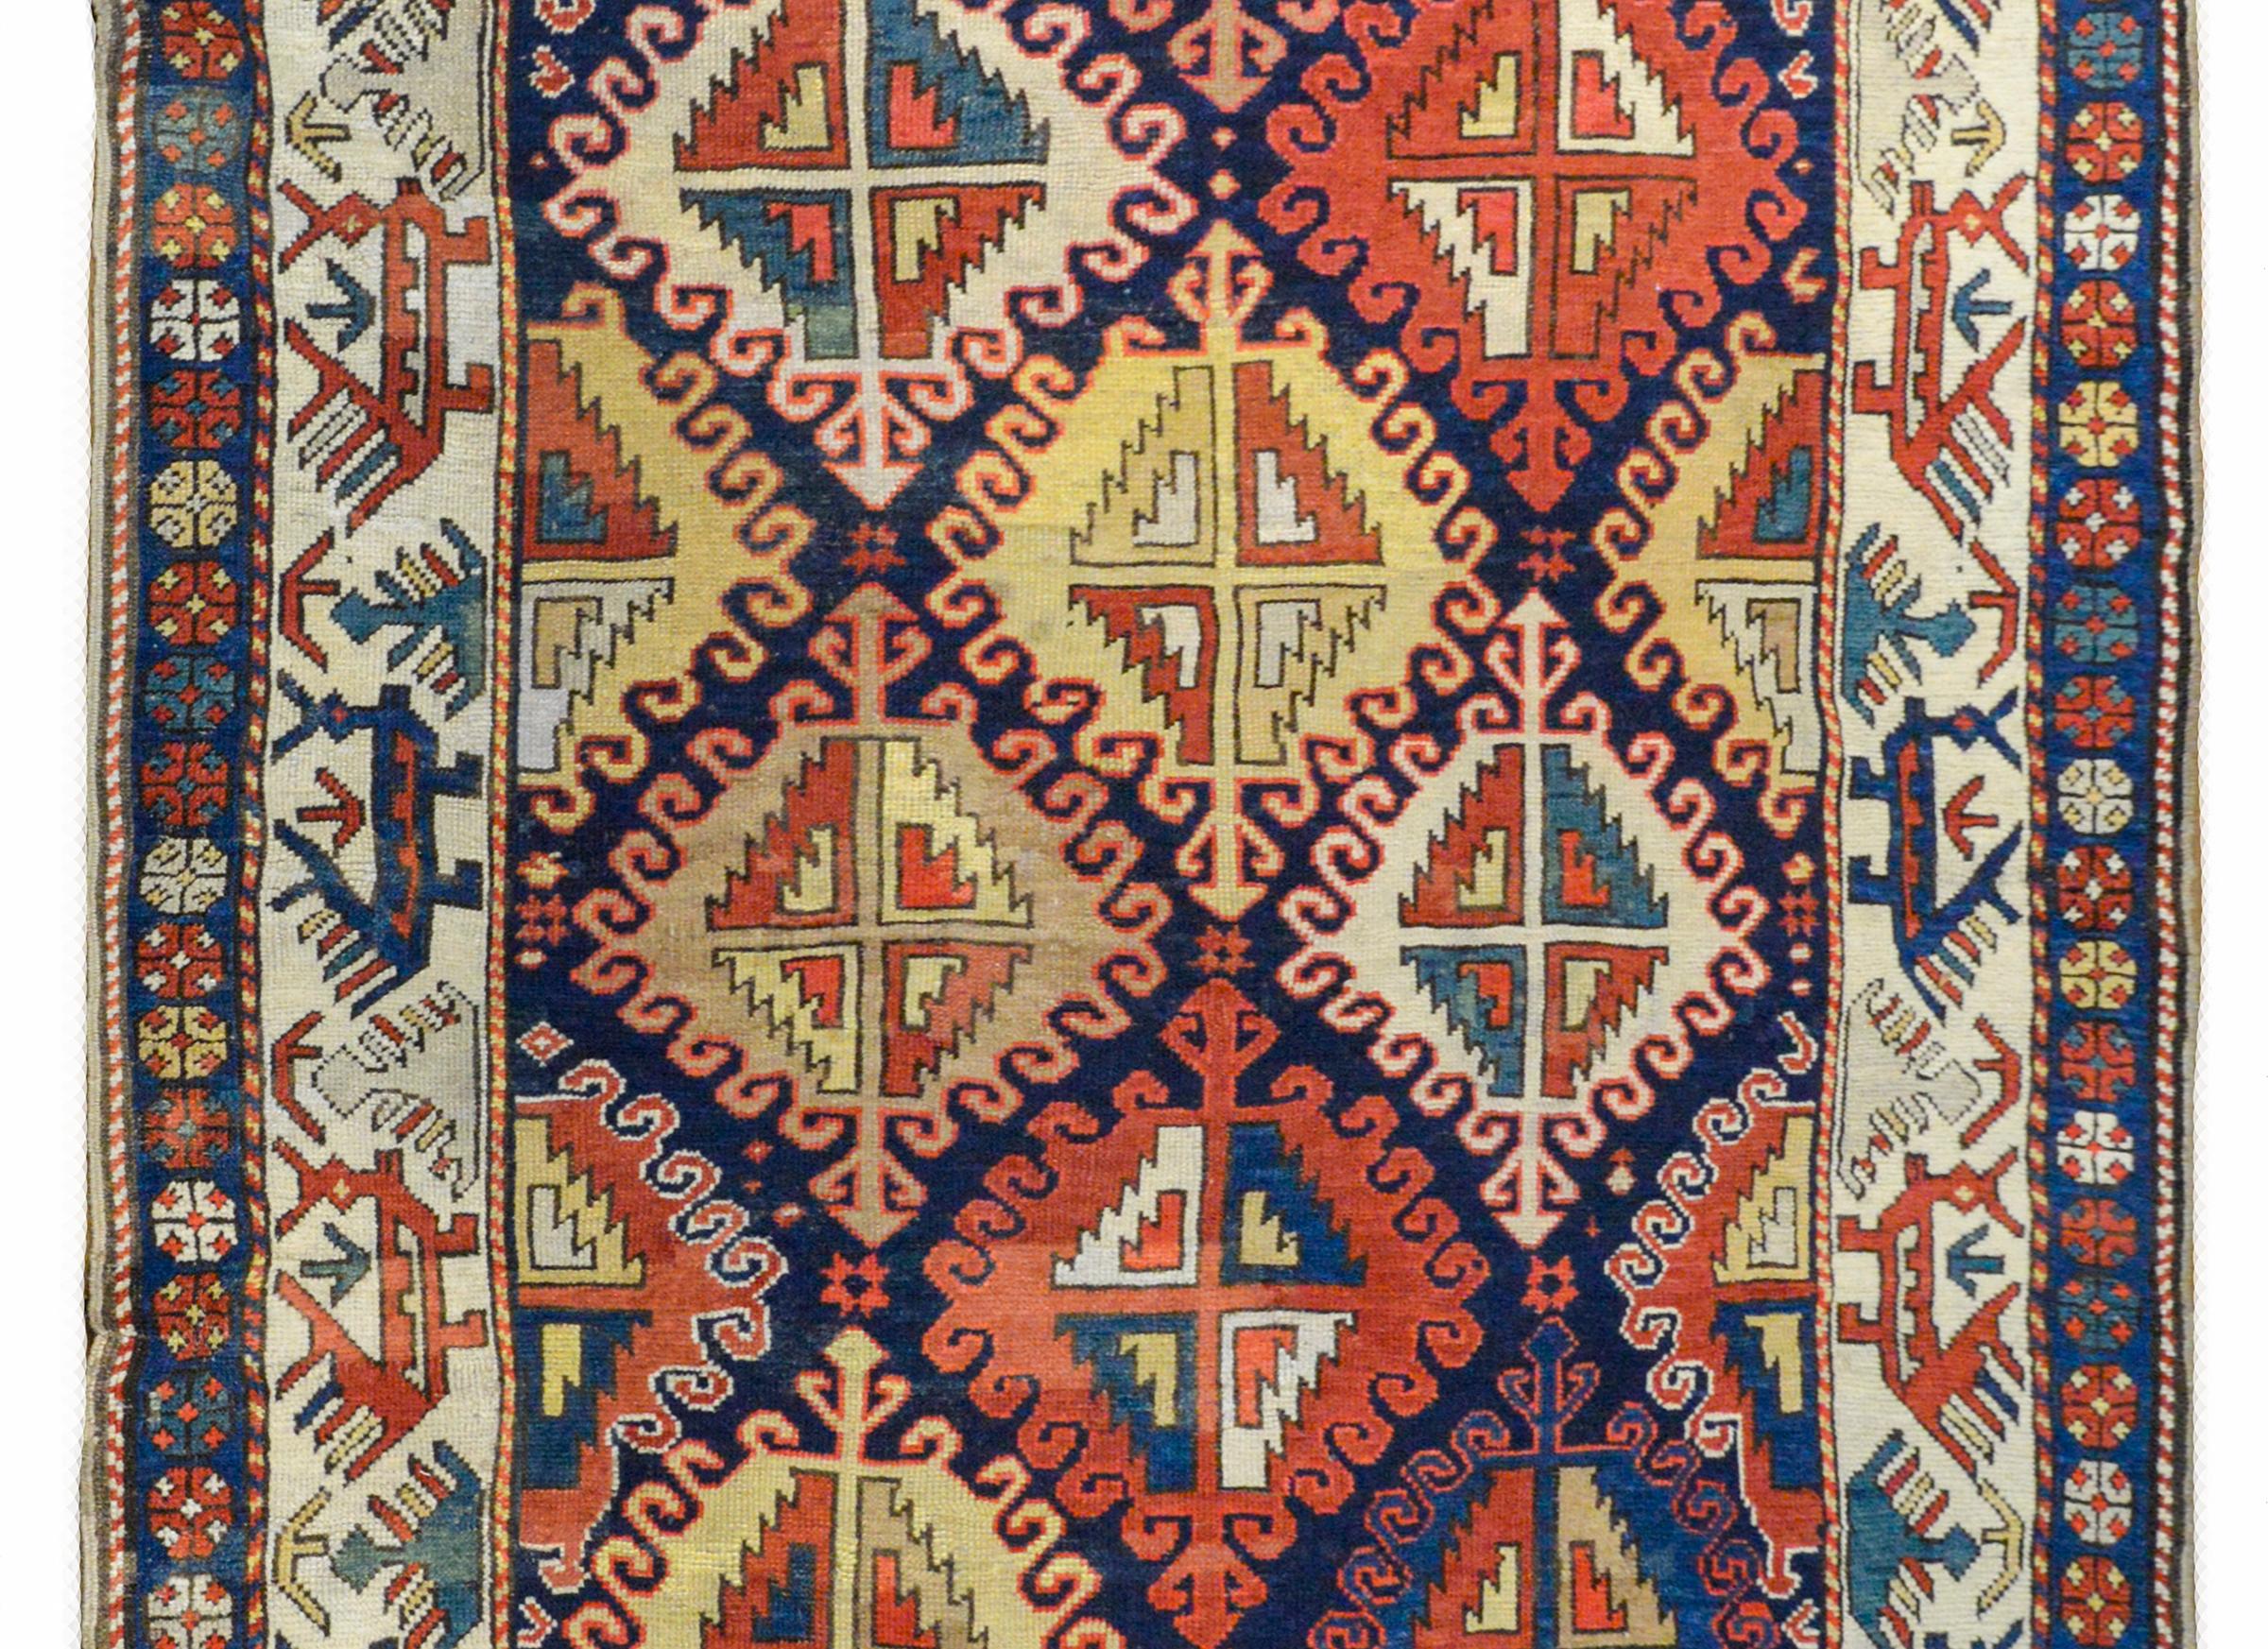 Ein hervorragender Kazak-Teppich aus dem späten 19. Jahrhundert mit einem wunderschönen, kühnen, stilisierten Blumenmuster in leuchtenden Rot-, Gelb-, Grün- und Blautönen auf einem dunklen indigoblauen Hintergrund. Die Bordüre ist wunderschön mit